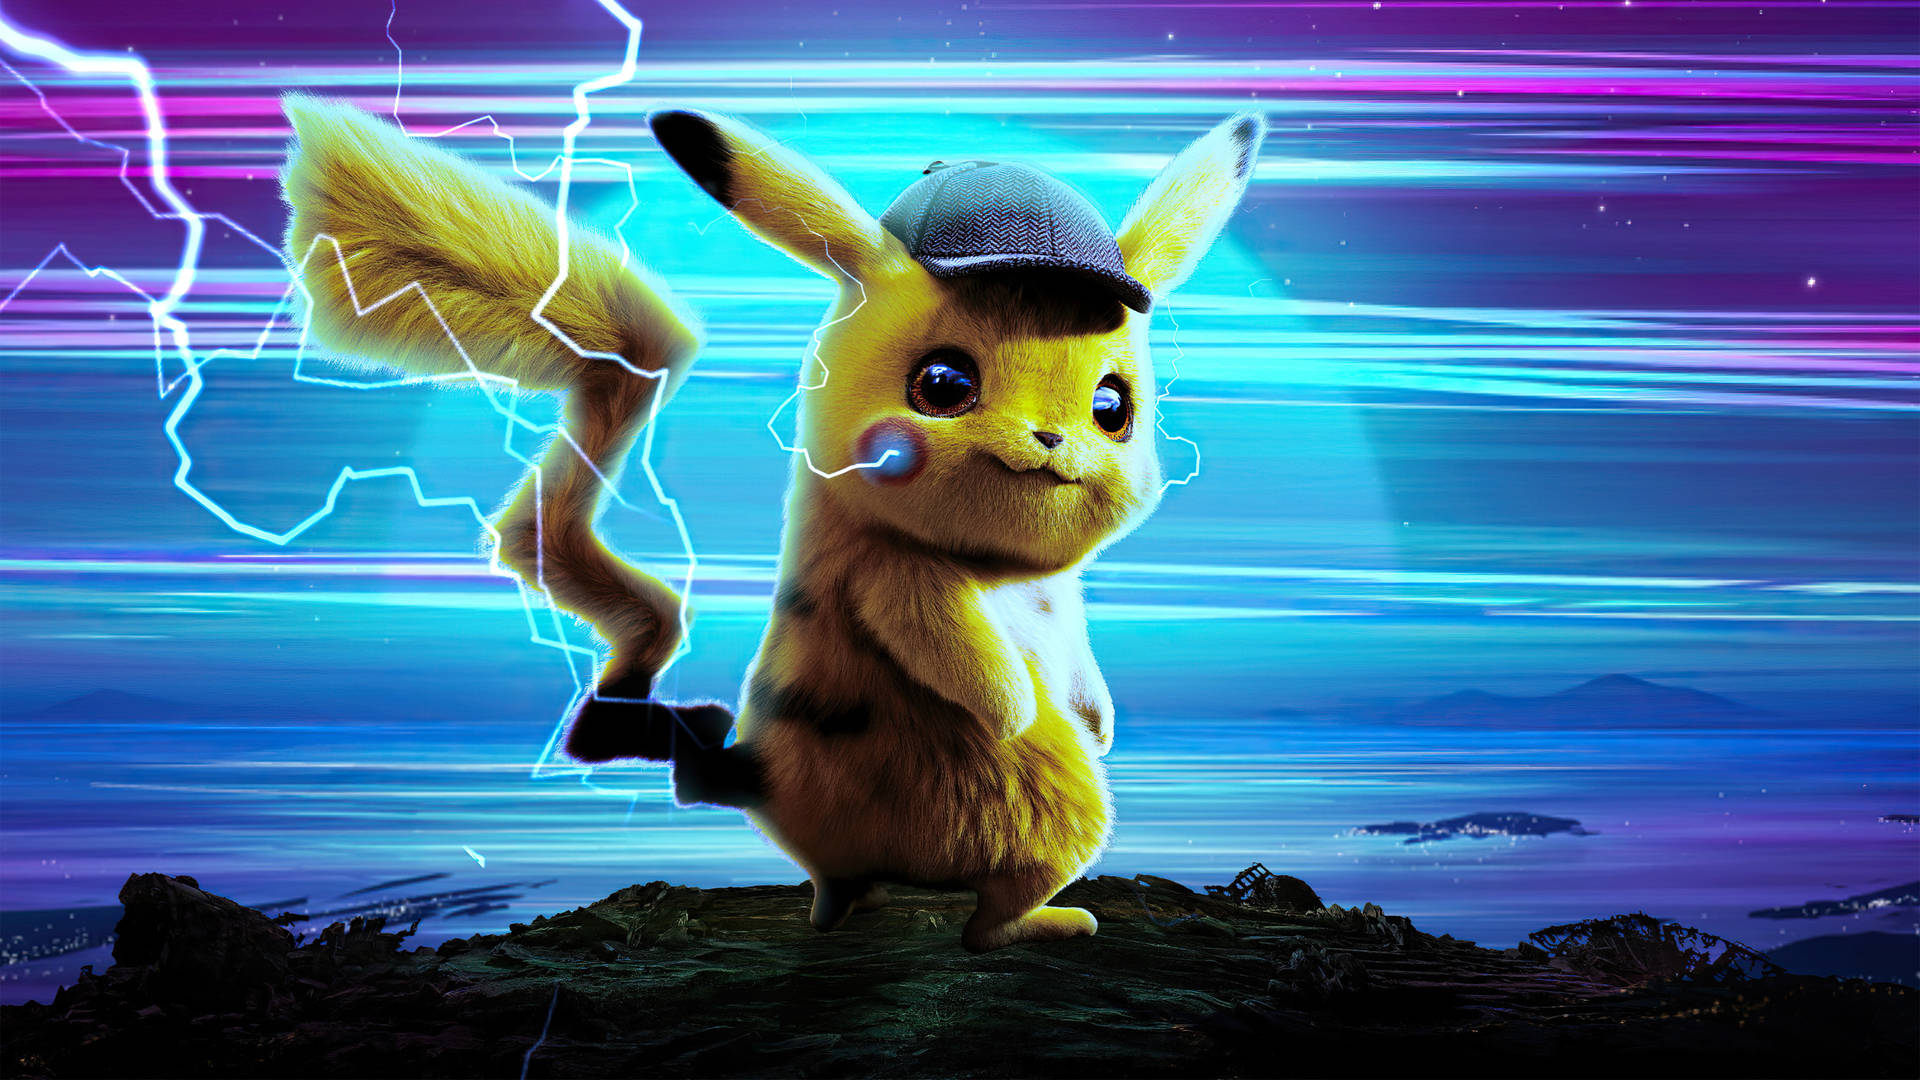 Pikachu Thunderbolt Attack